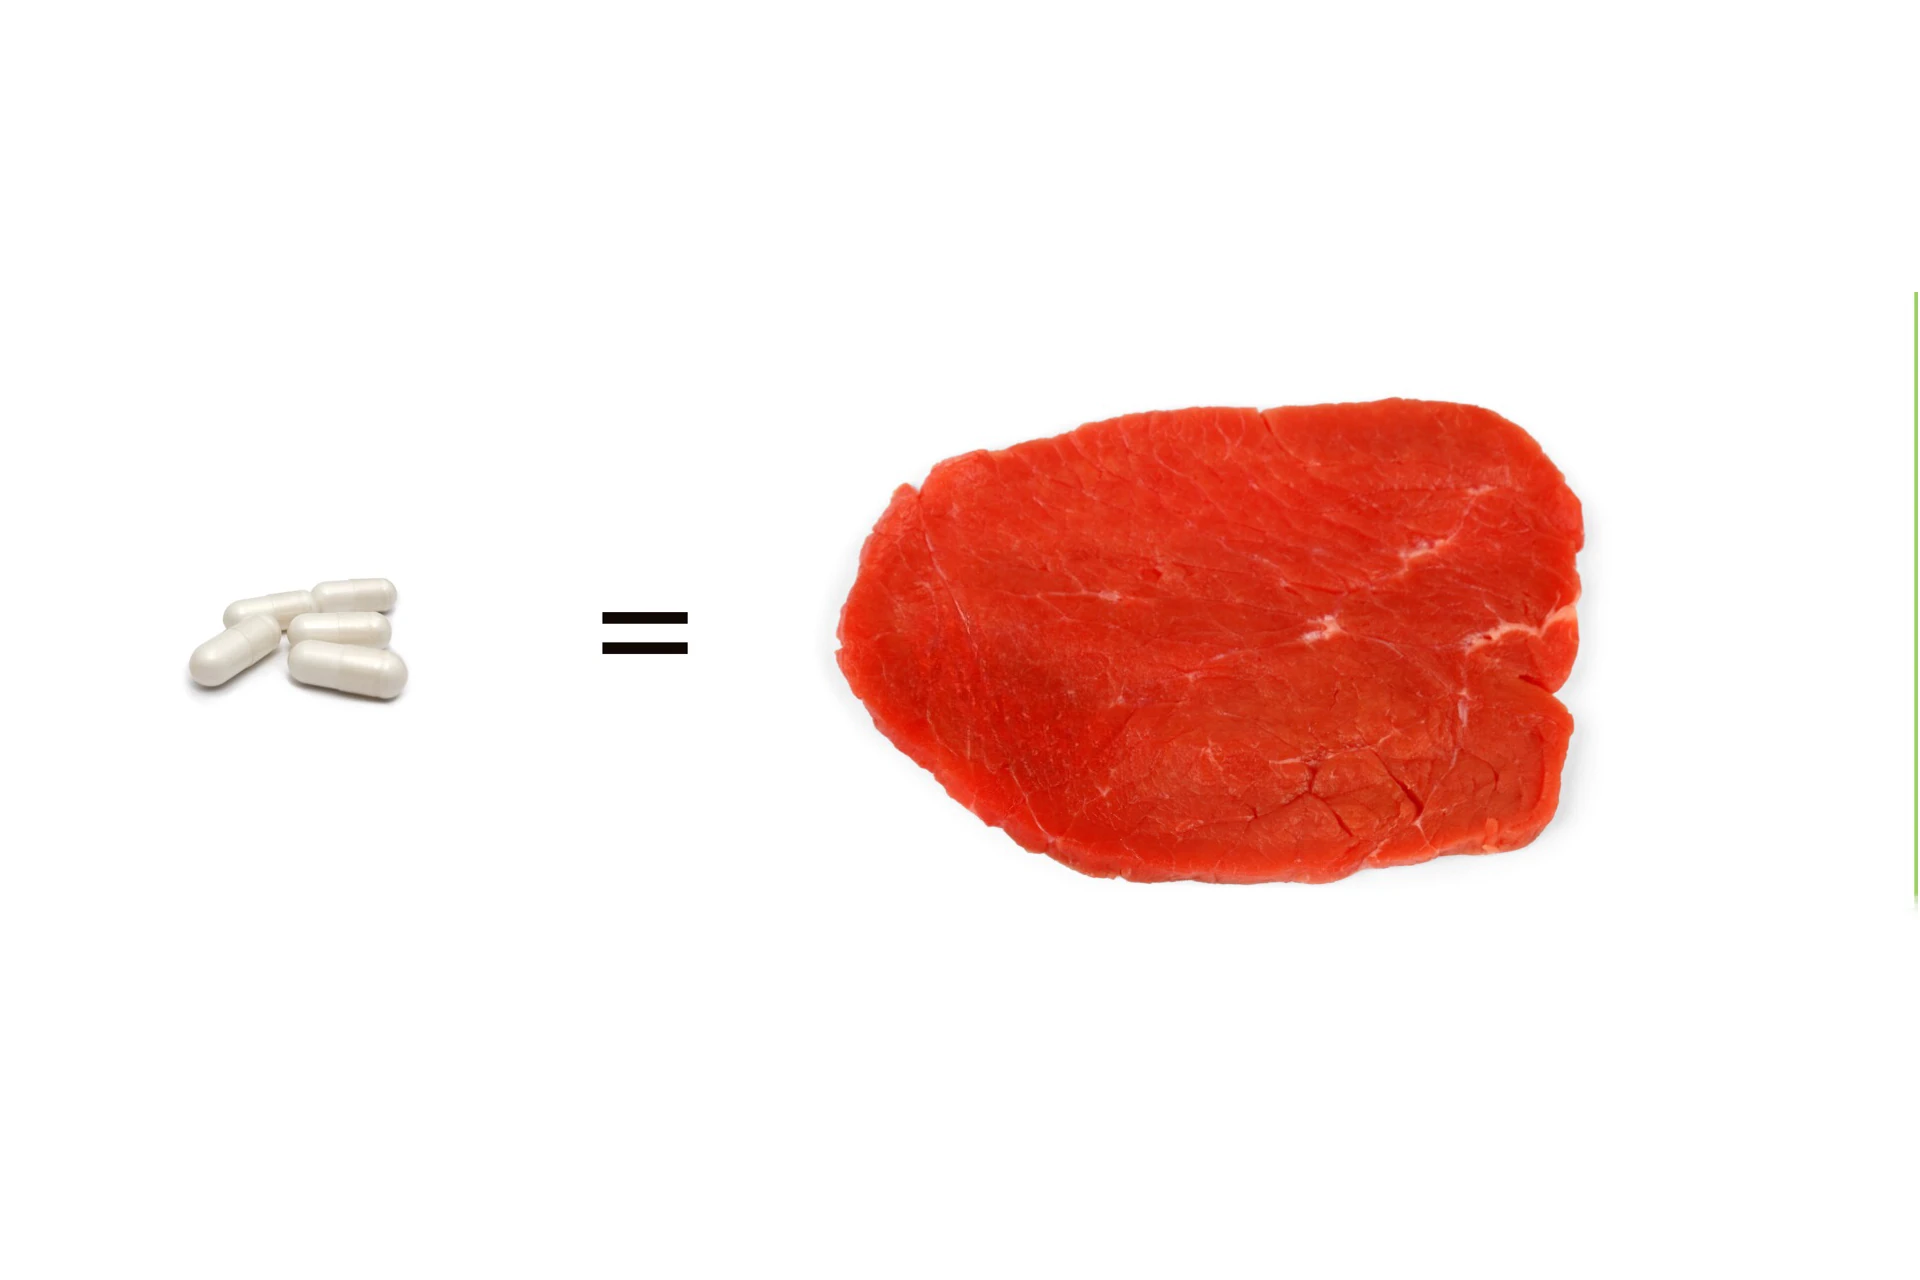 Man sieht fünf kleine weiße Kapseln und daneben ein Stück rotes Fleisch. Das Bild zeigt Moretti Kapseln und das fünf Stück davon so viel Eiweiß enthalten wie ein kleines Steak.